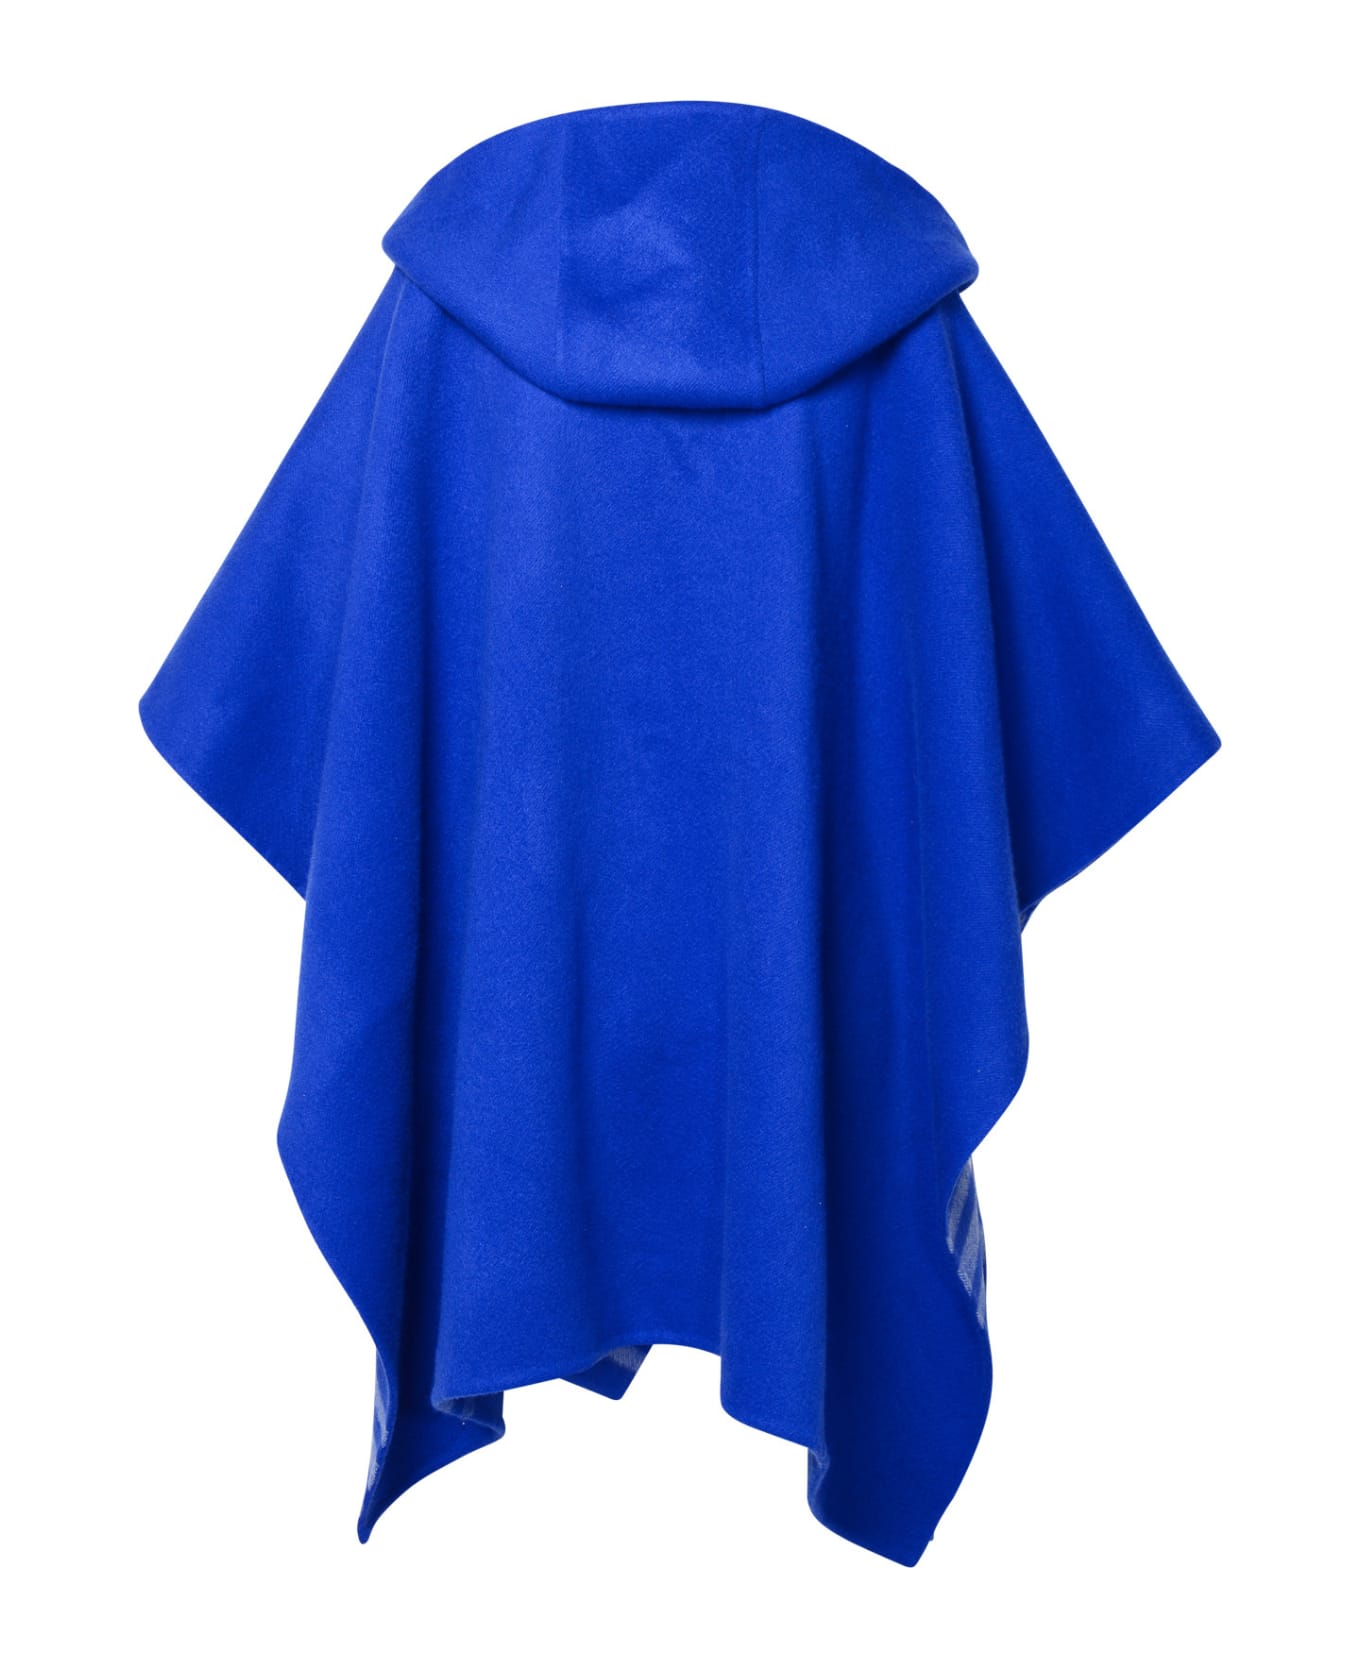 Burberry Blue Cashmere Cap - Blue